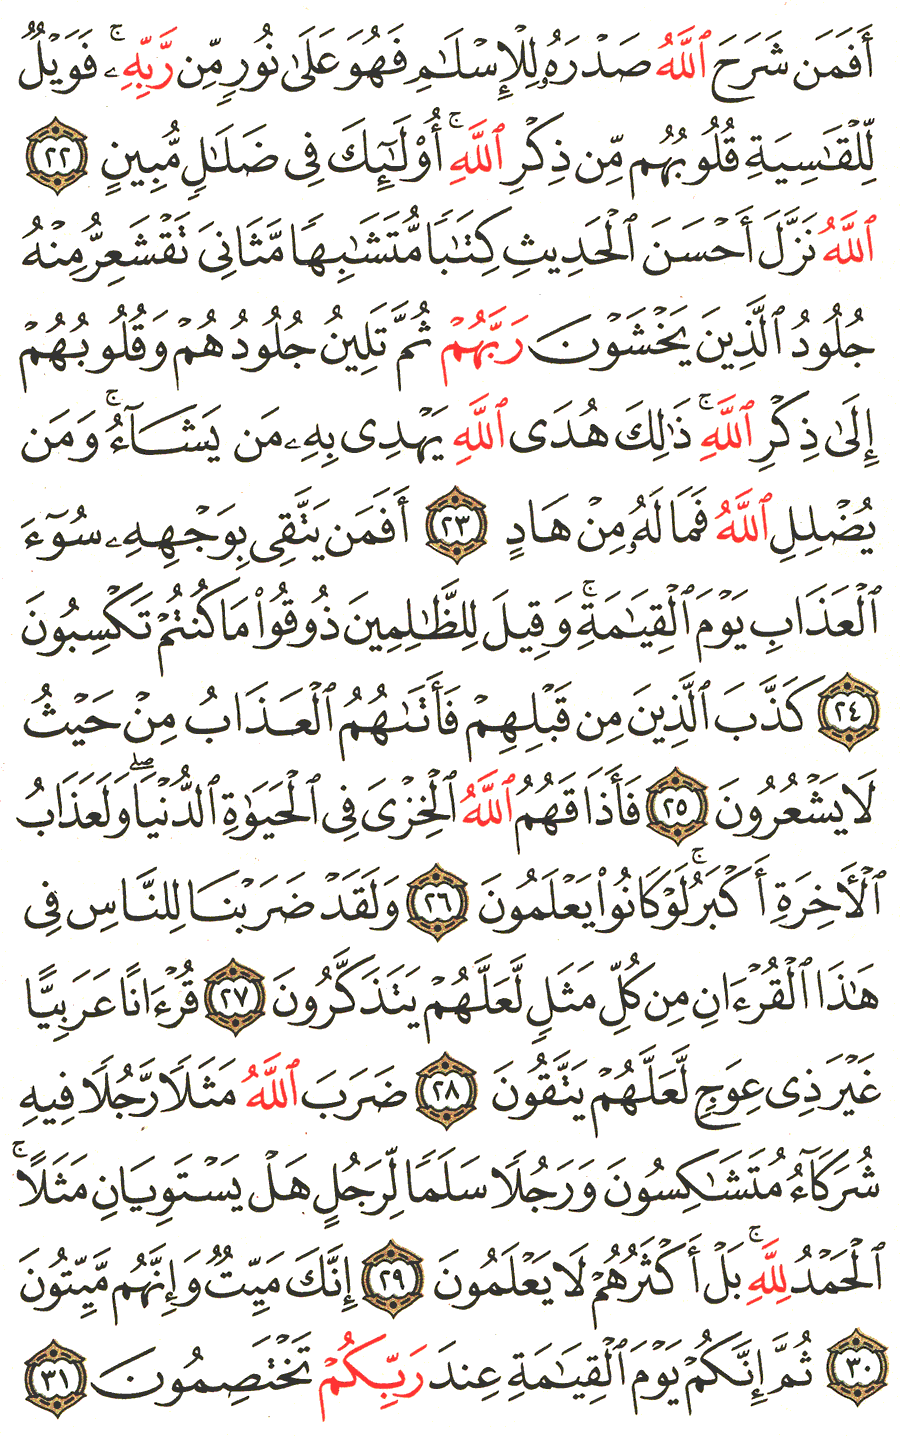 الصفحة 461 من القرآن الكريم